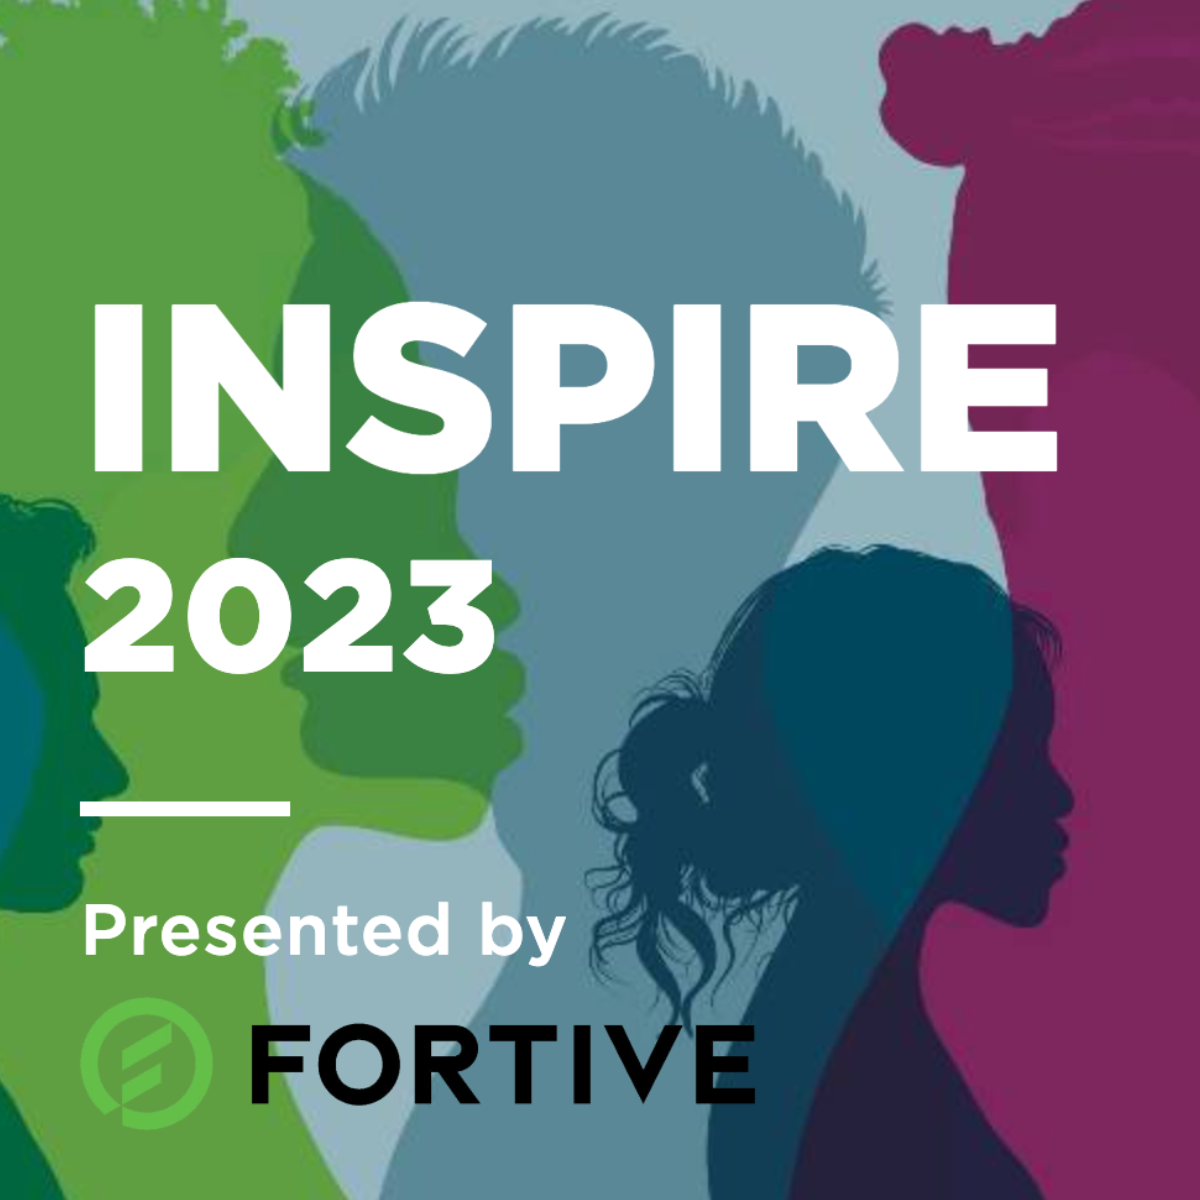 INSPIRE 2023 